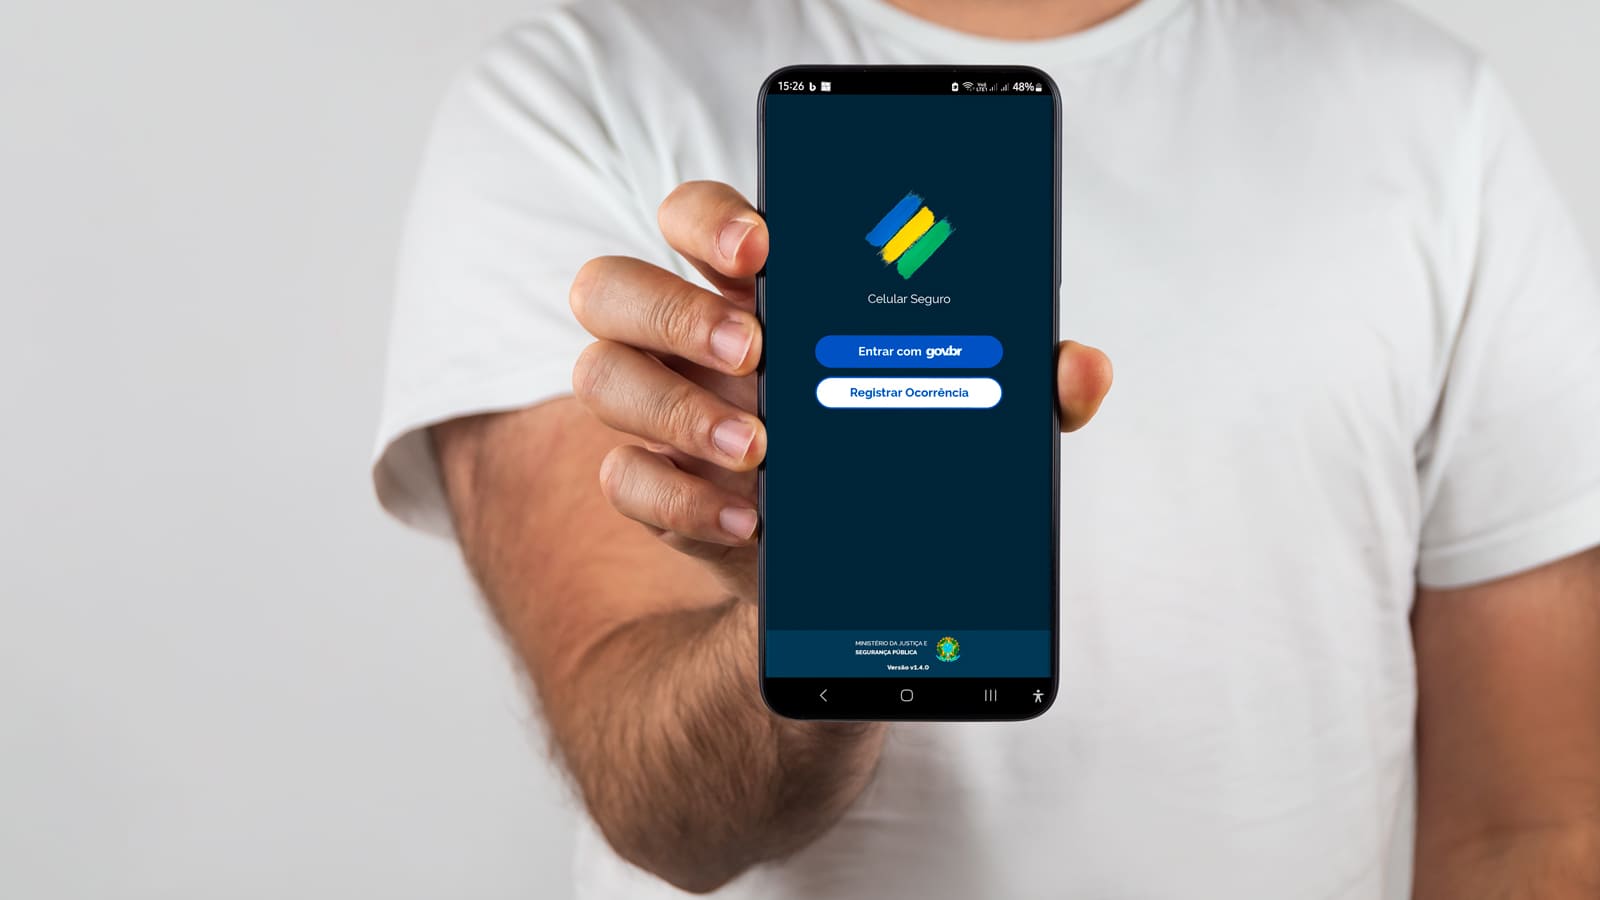 Mão segurando um smartphone que mostra o aplicativo Celular Seguro aberto, mostrando opções para entrar com o Google e registrar ocorrência.